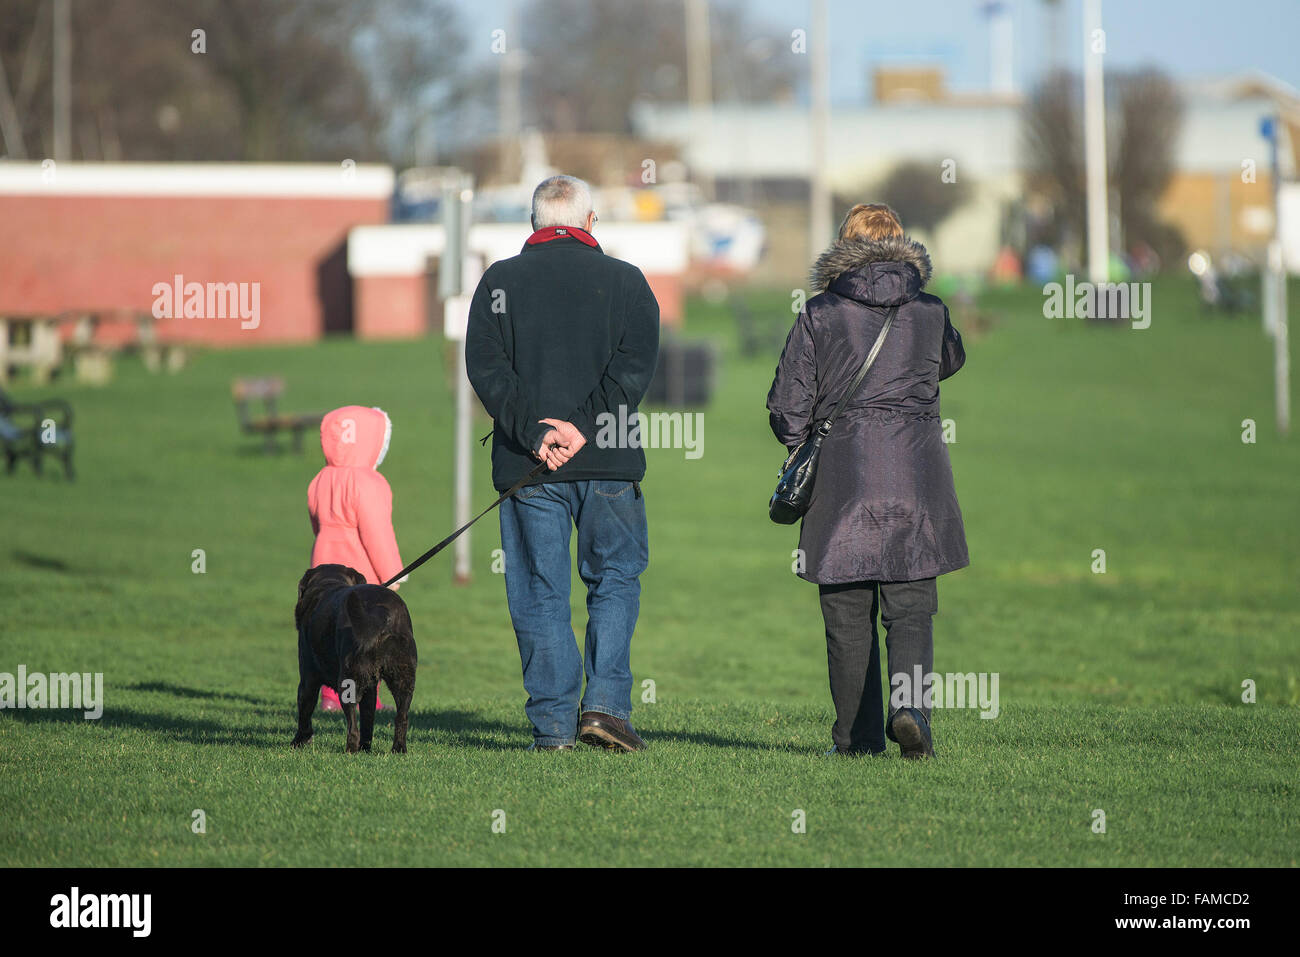 Los abuelos caminando con su nieta - los abuelos caminando con su nieto y su perro. Foto de stock